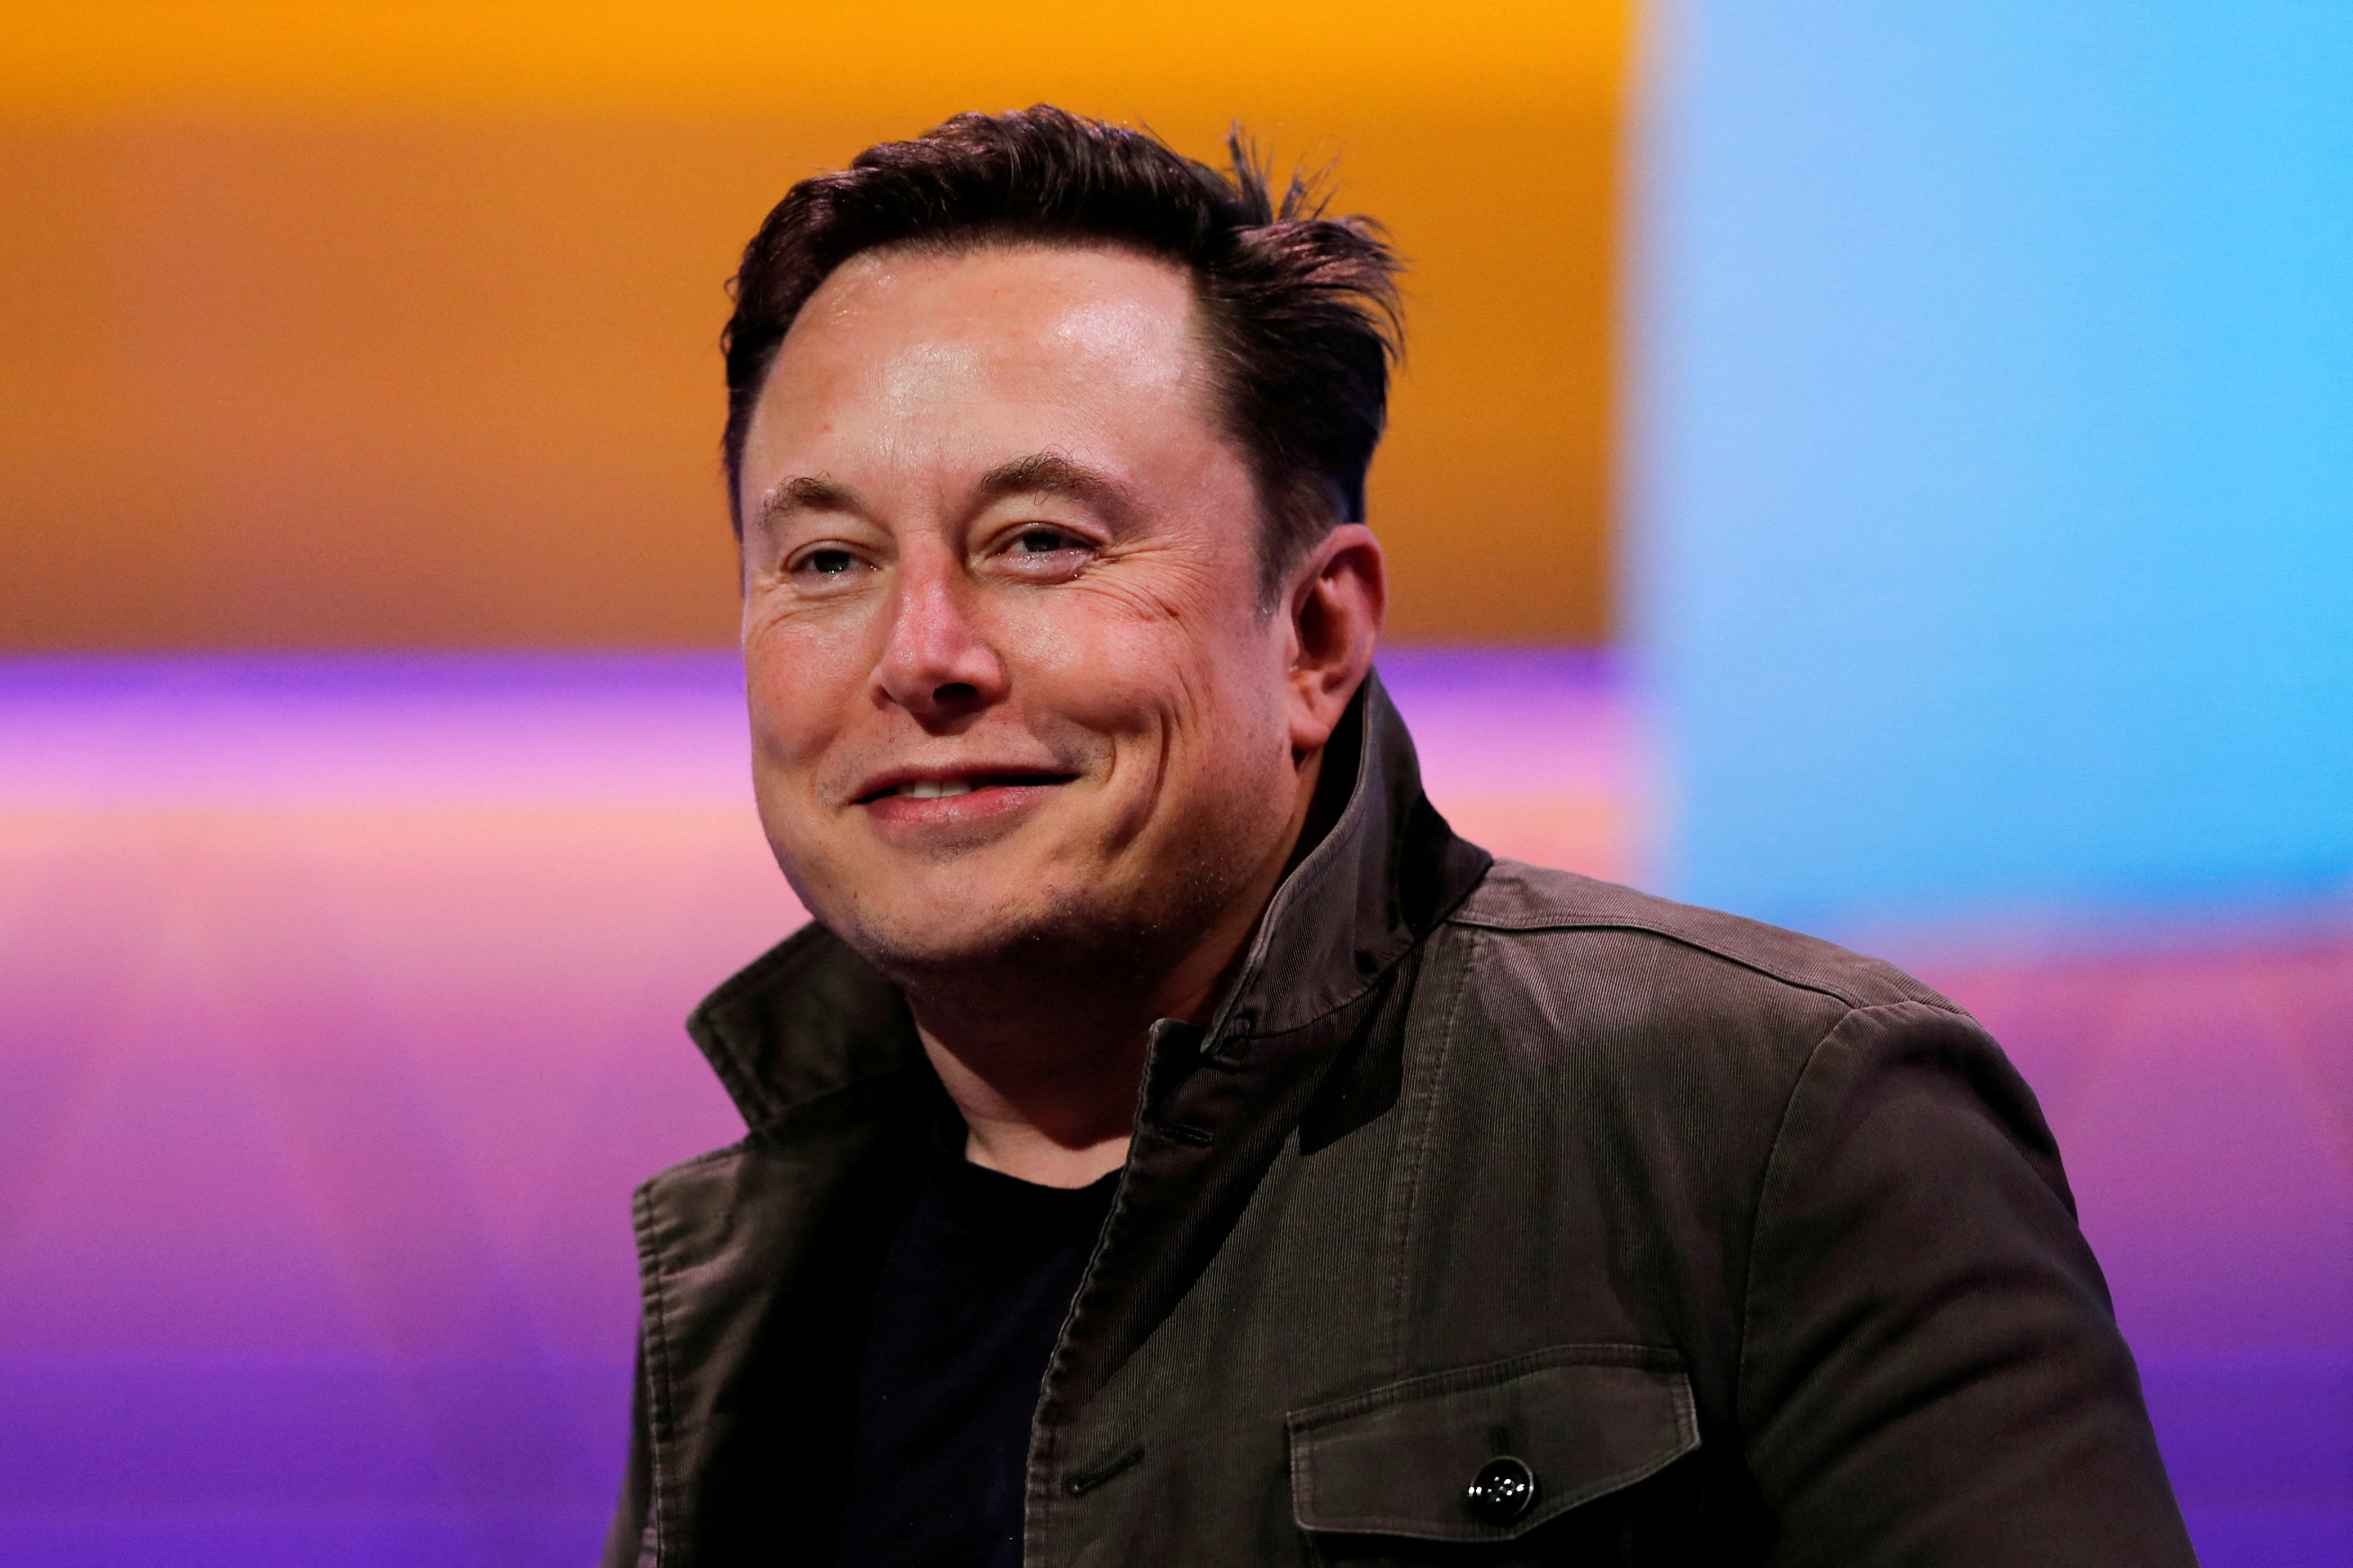  Elon Musk sold 10000 bottles of Burnt Hair perfume